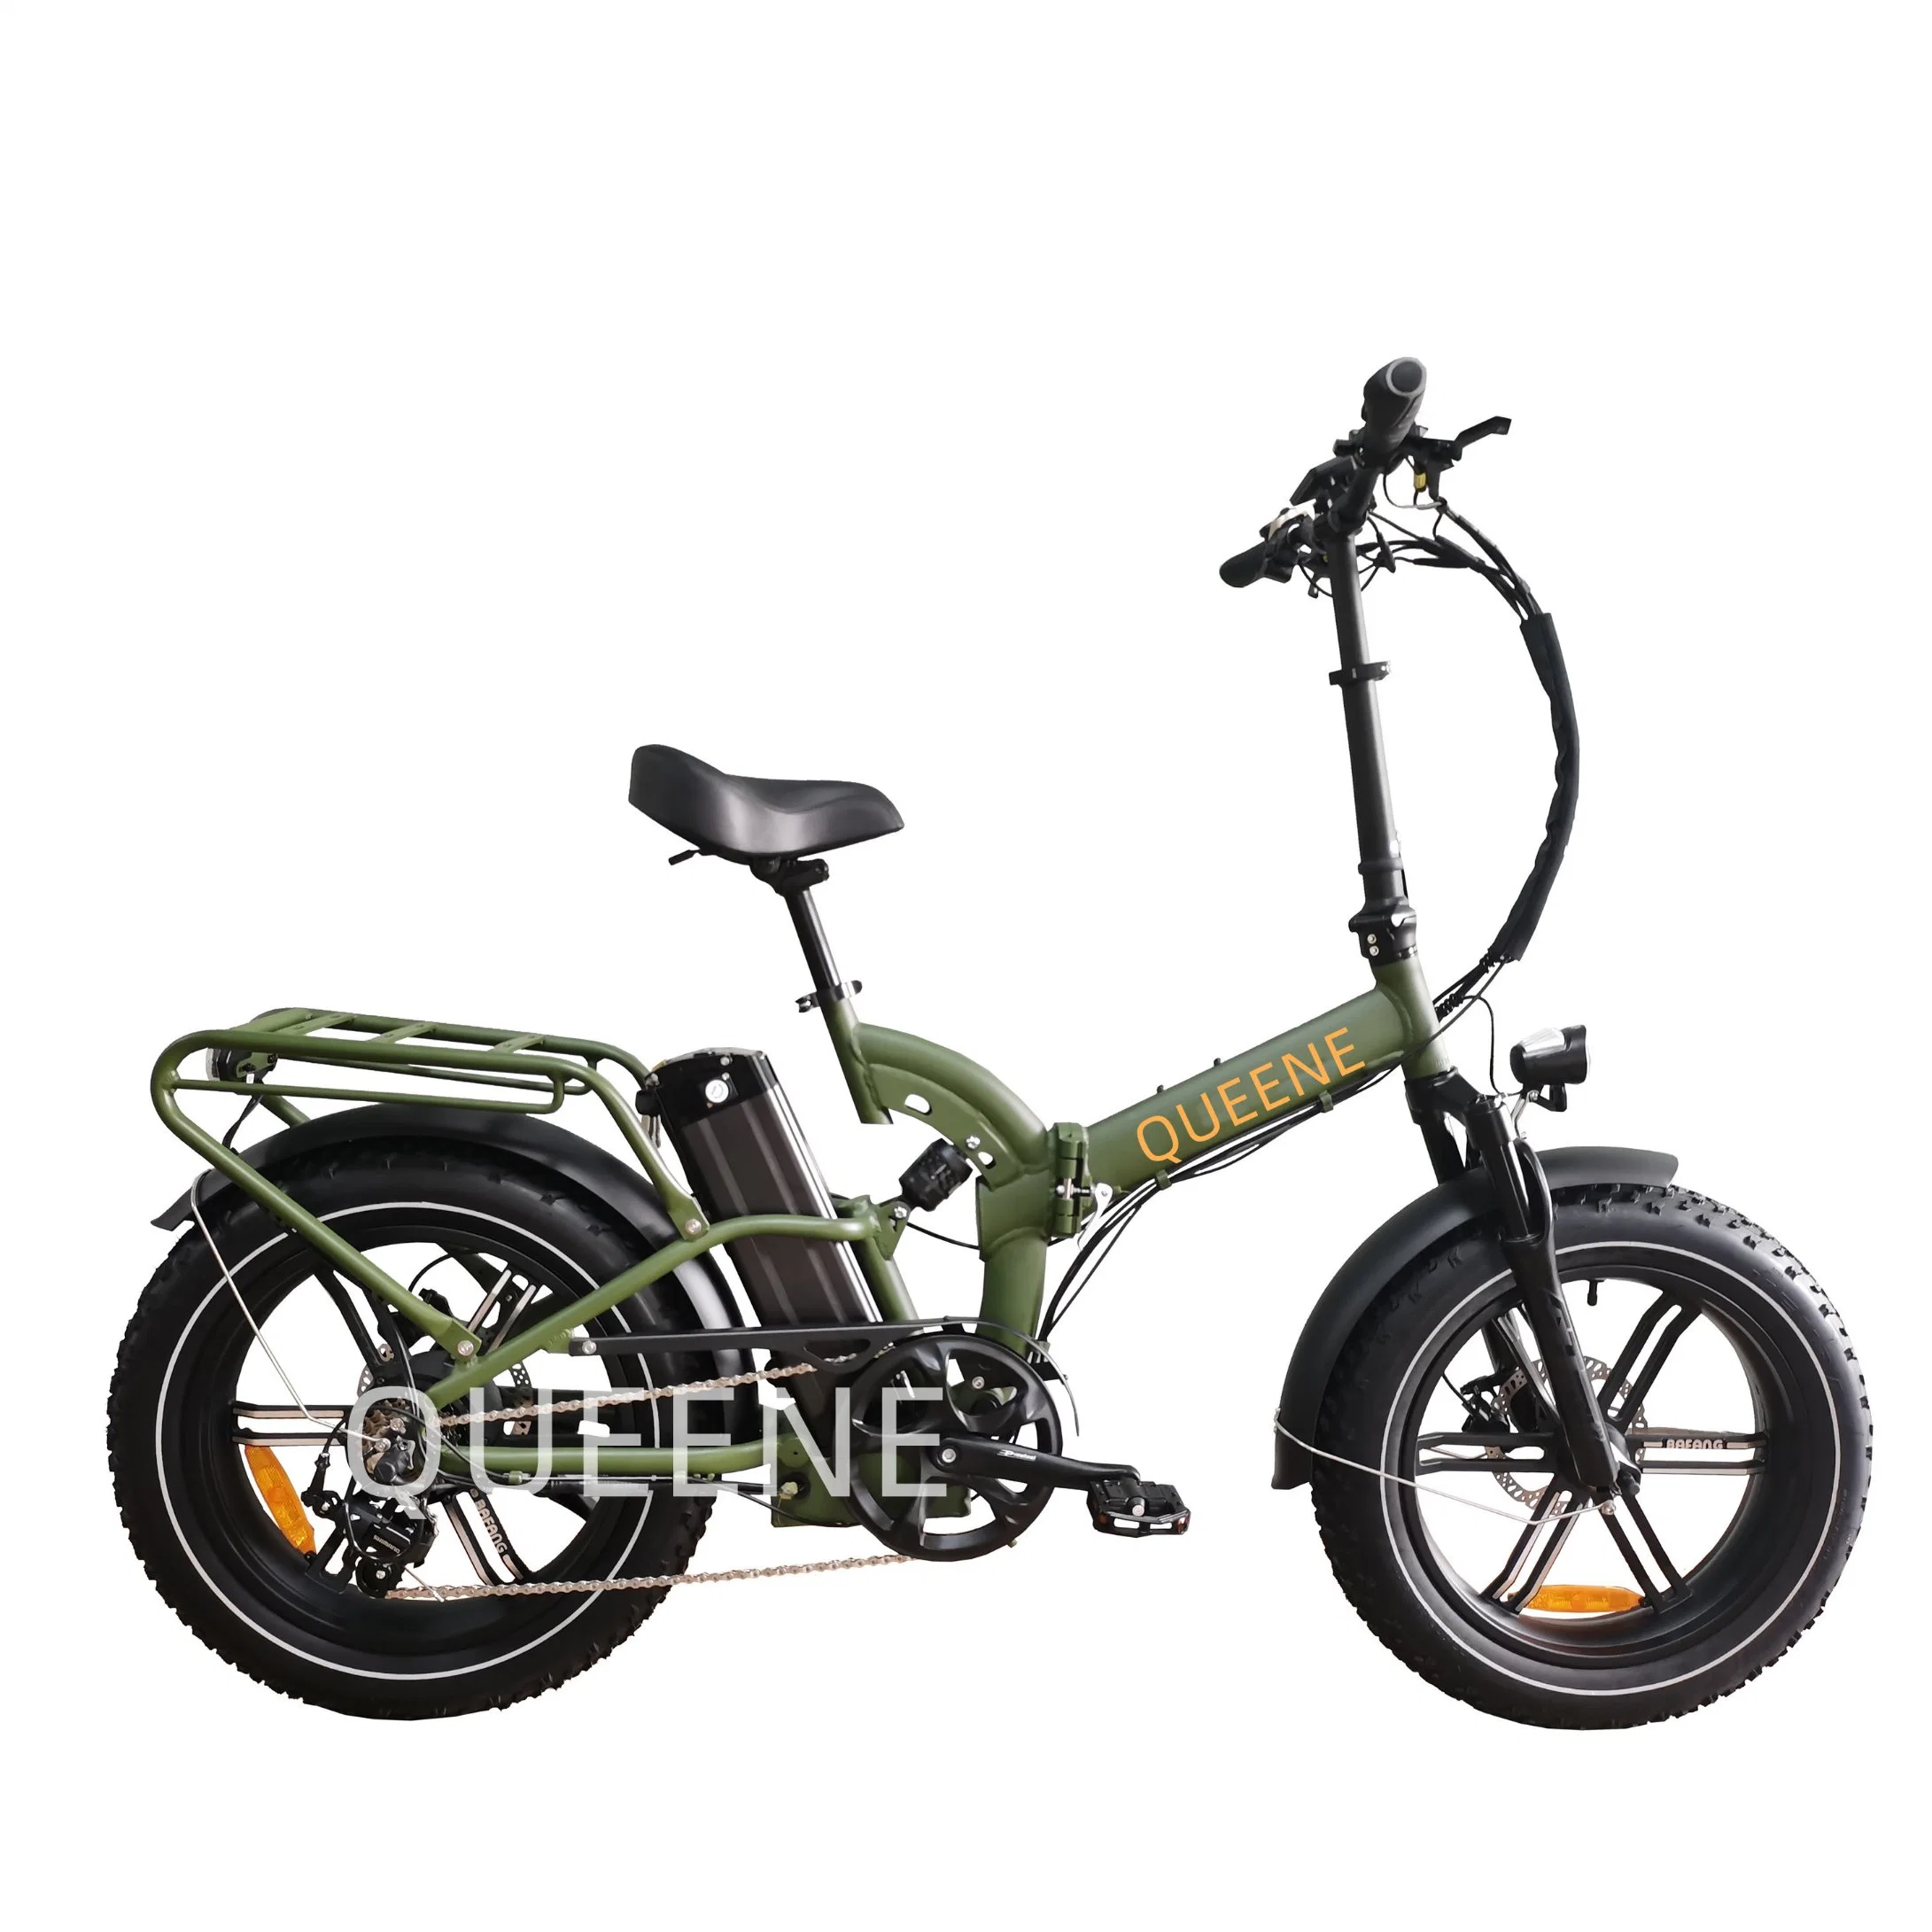 Rainha das/China Vintage barato 750W 1000W e Motor Ebike bicicletas de montanha de sujeira pneu gordura Aluguer de bicicleta eléctrica